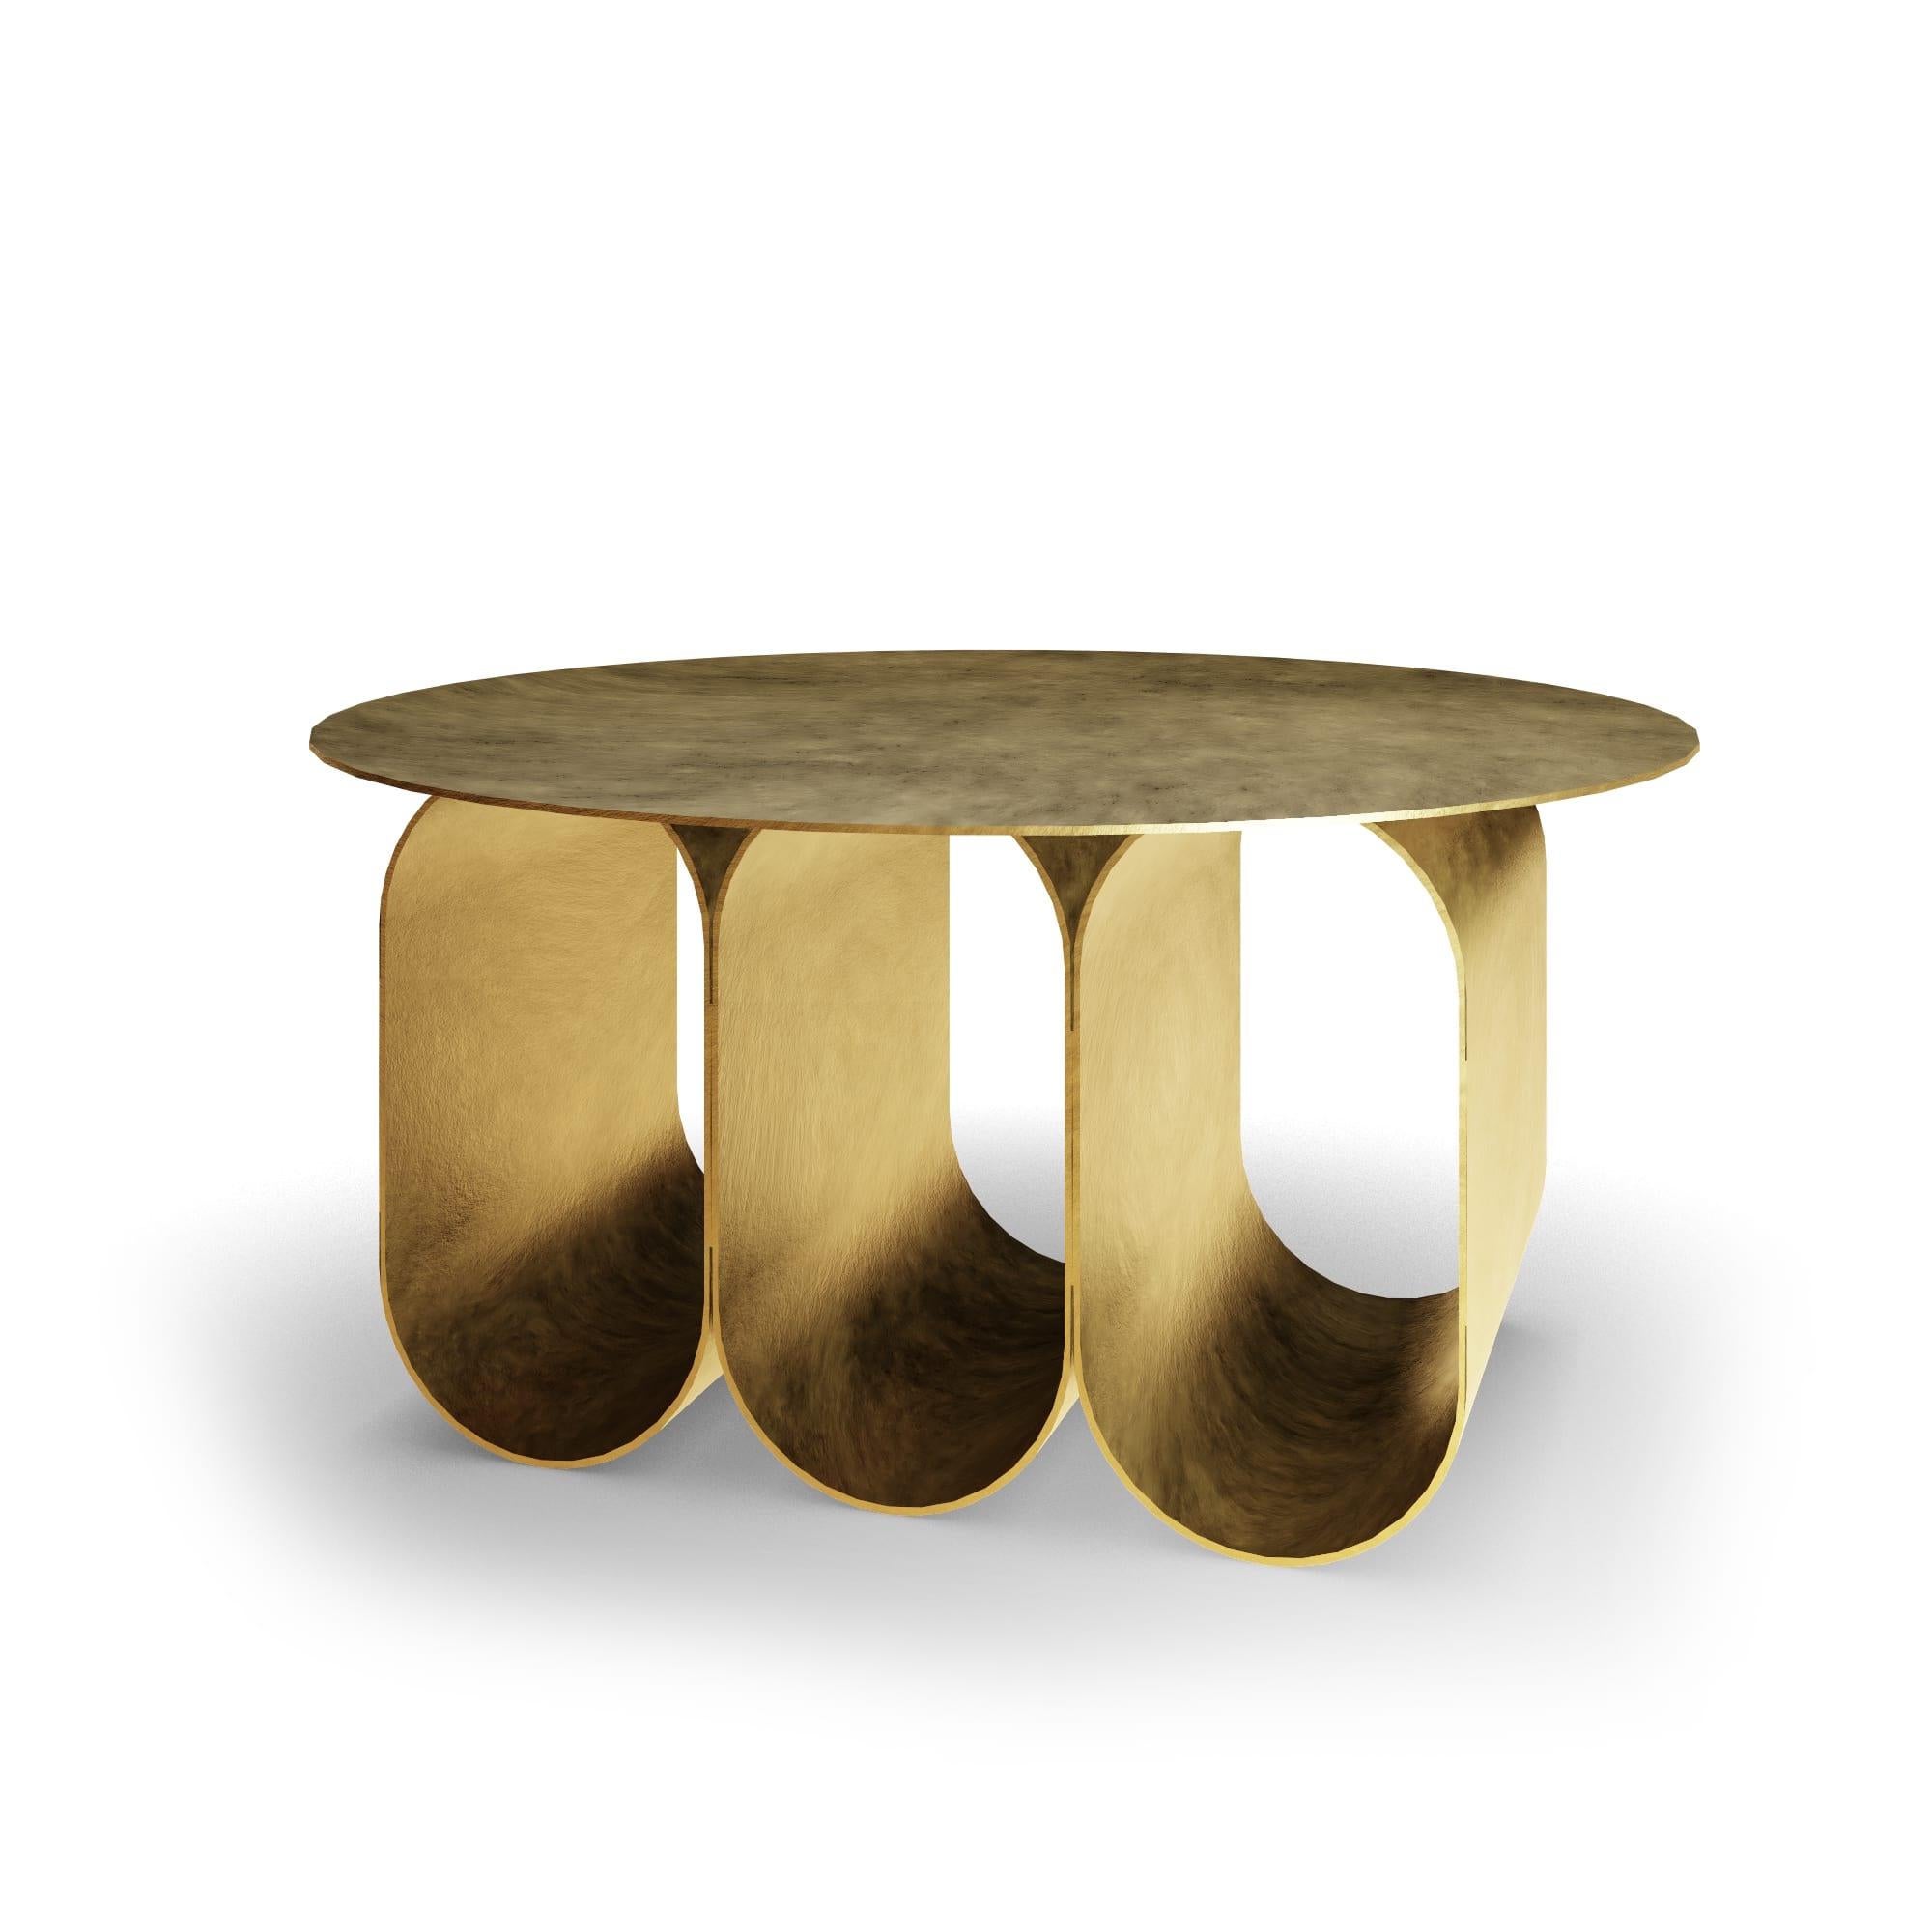 La table basse Arcade - version ronde 3 arches - or, a été créée par Kasadamo en collaboration avec Pierre Tassin, designer français. Cette table reflète un mélange d'architecture ancienne et futuriste. Son identité se retrouve dans les pieds